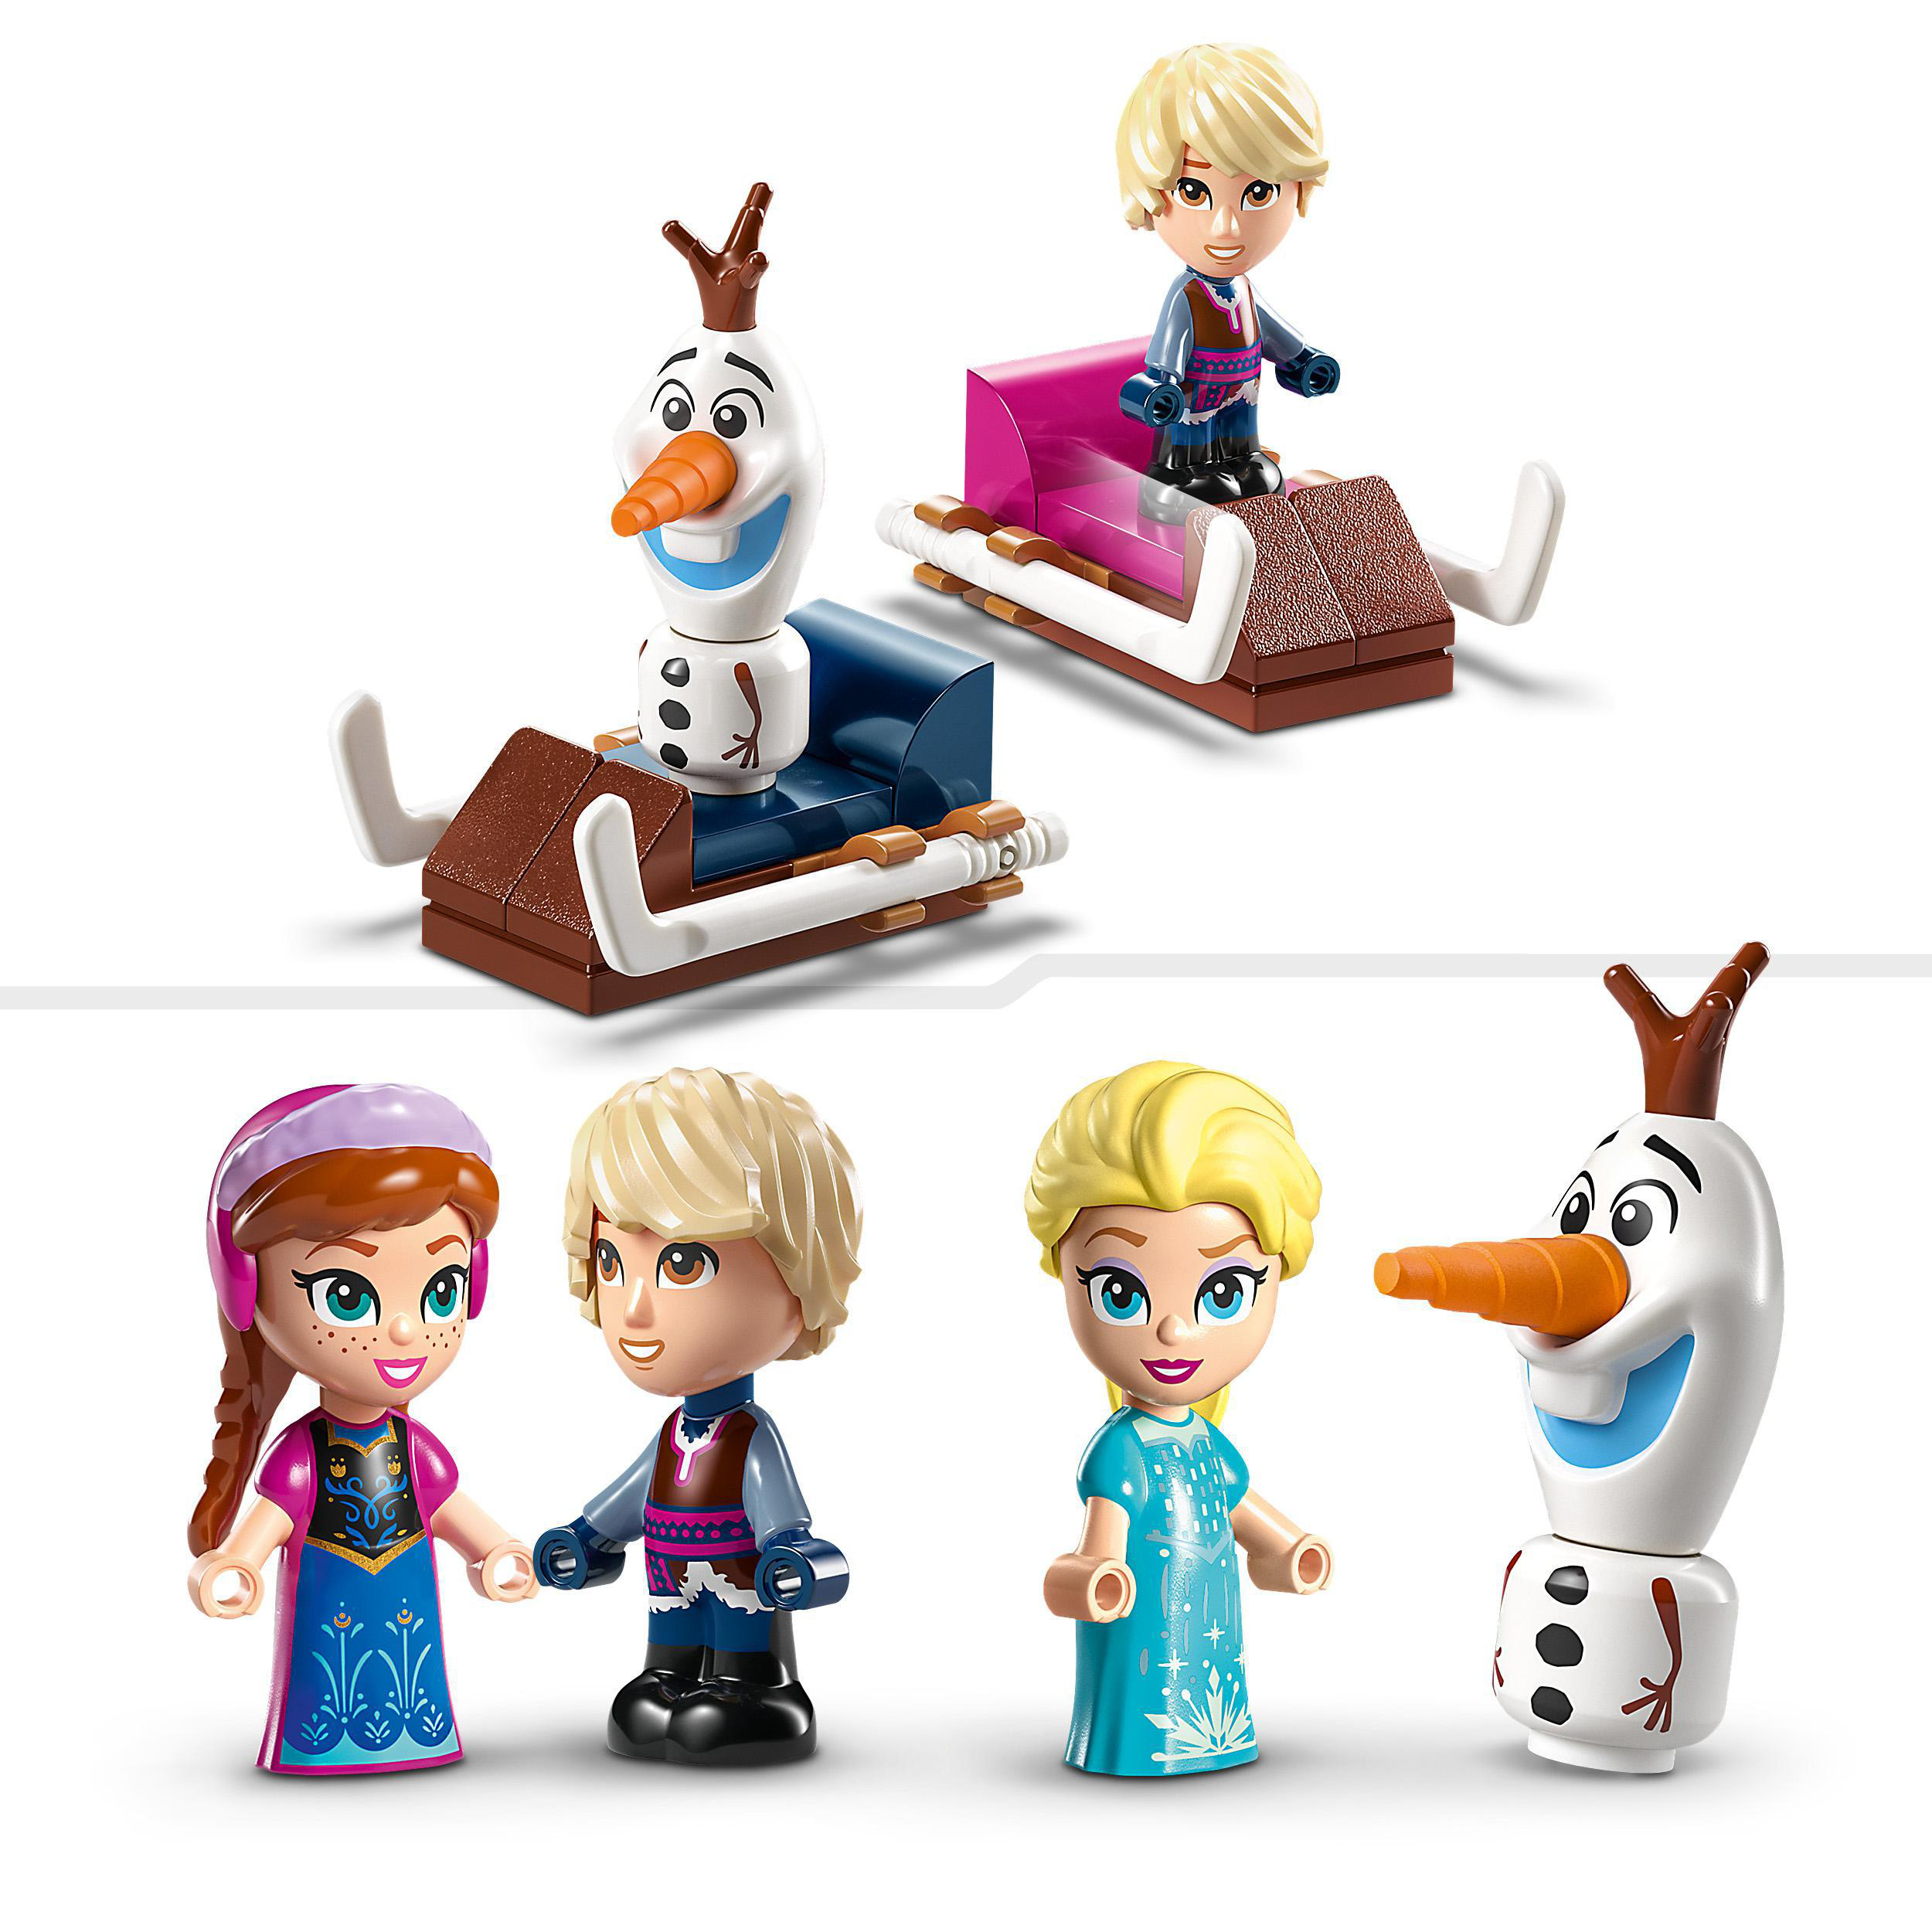 Disney magisches Princess Annas und Bausatz, 43218 LEGO Karussell Elsas Mehrfarbig